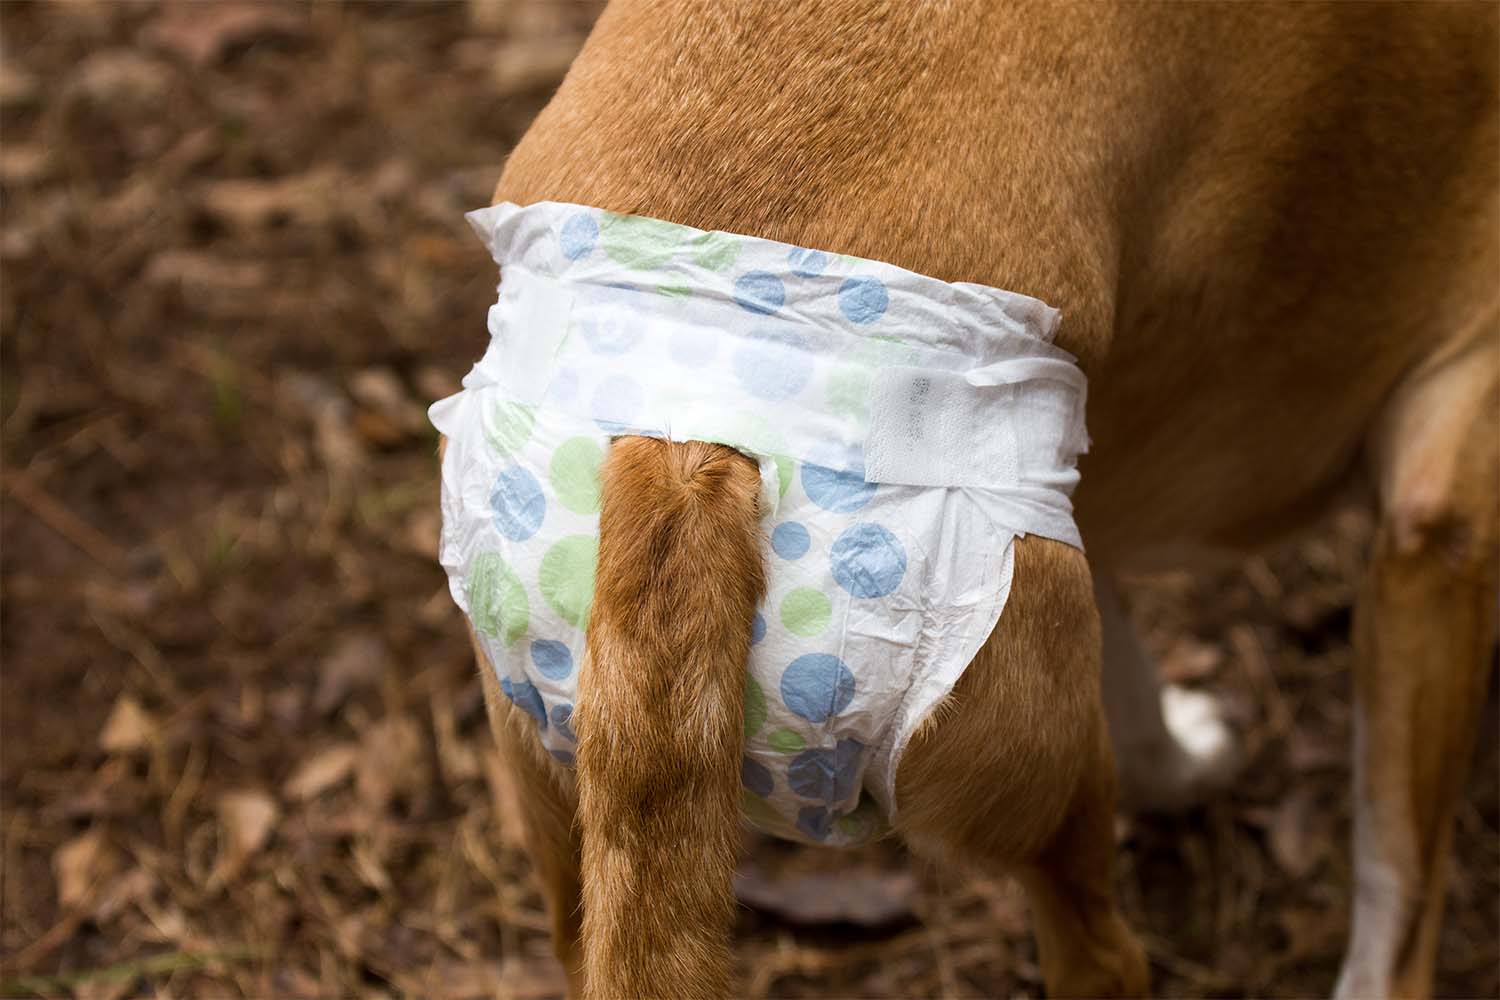 Dog Diaper